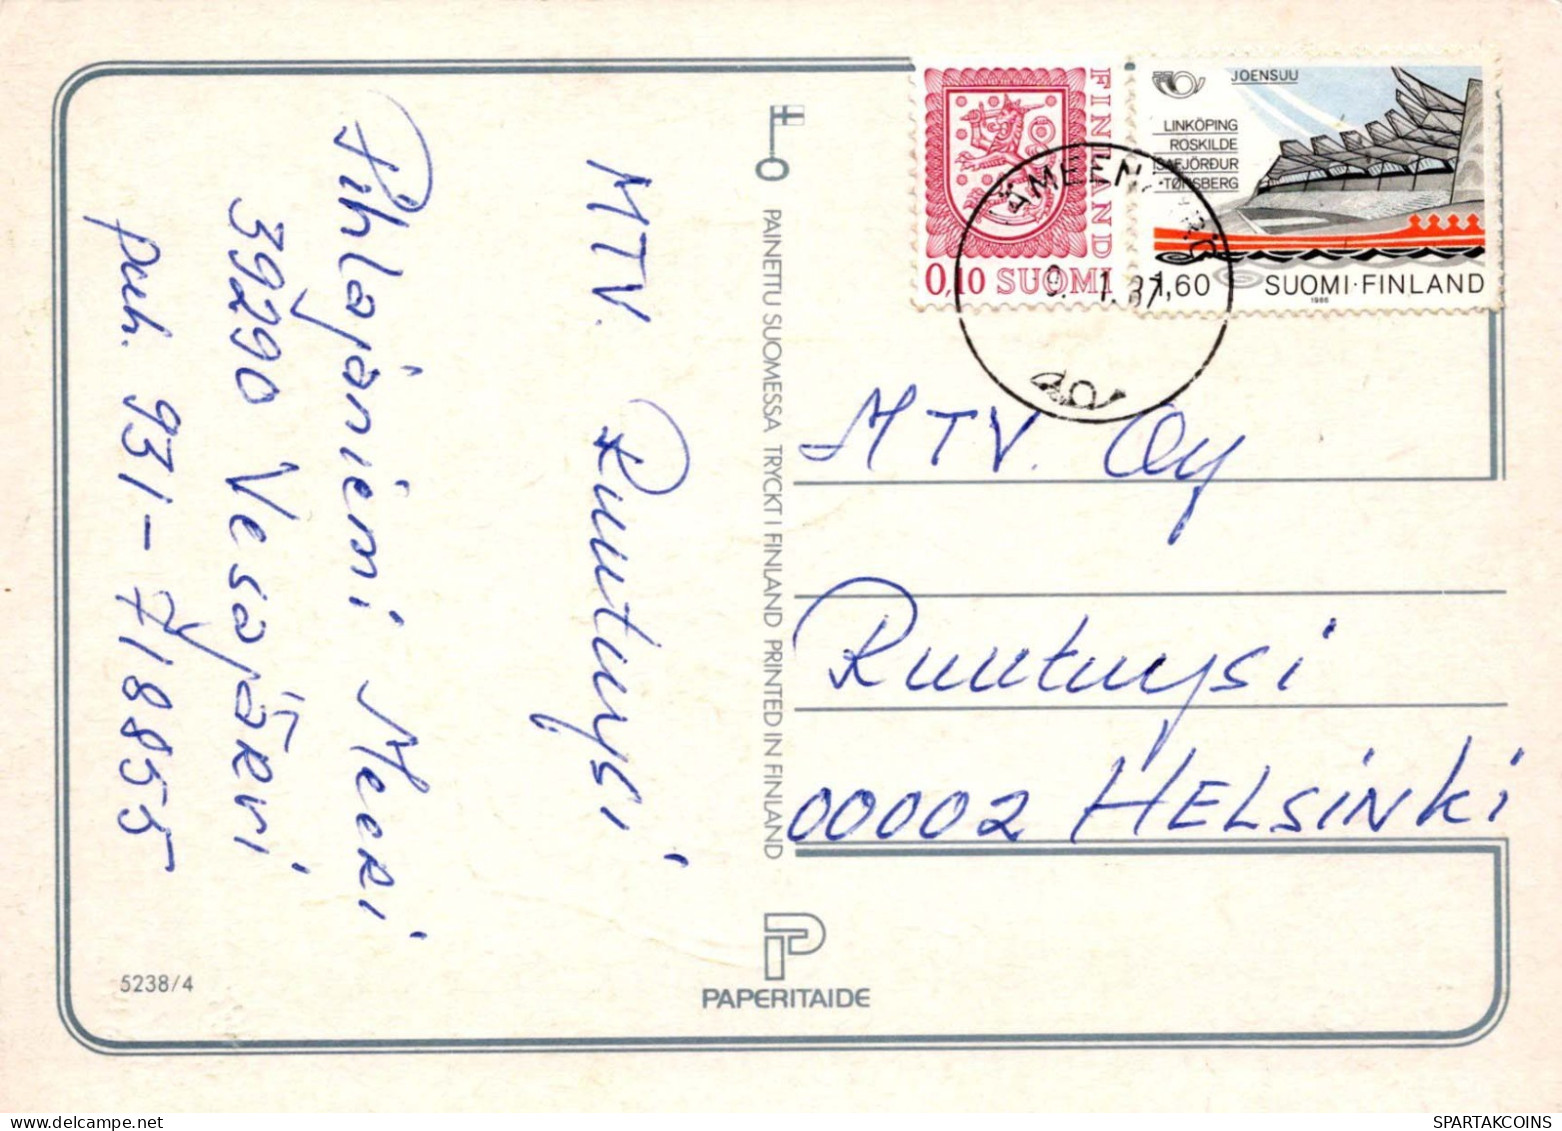 NIÑOS NIÑOS Escena S Paisajes Vintage Tarjeta Postal CPSM #PBT576.ES - Scenes & Landscapes